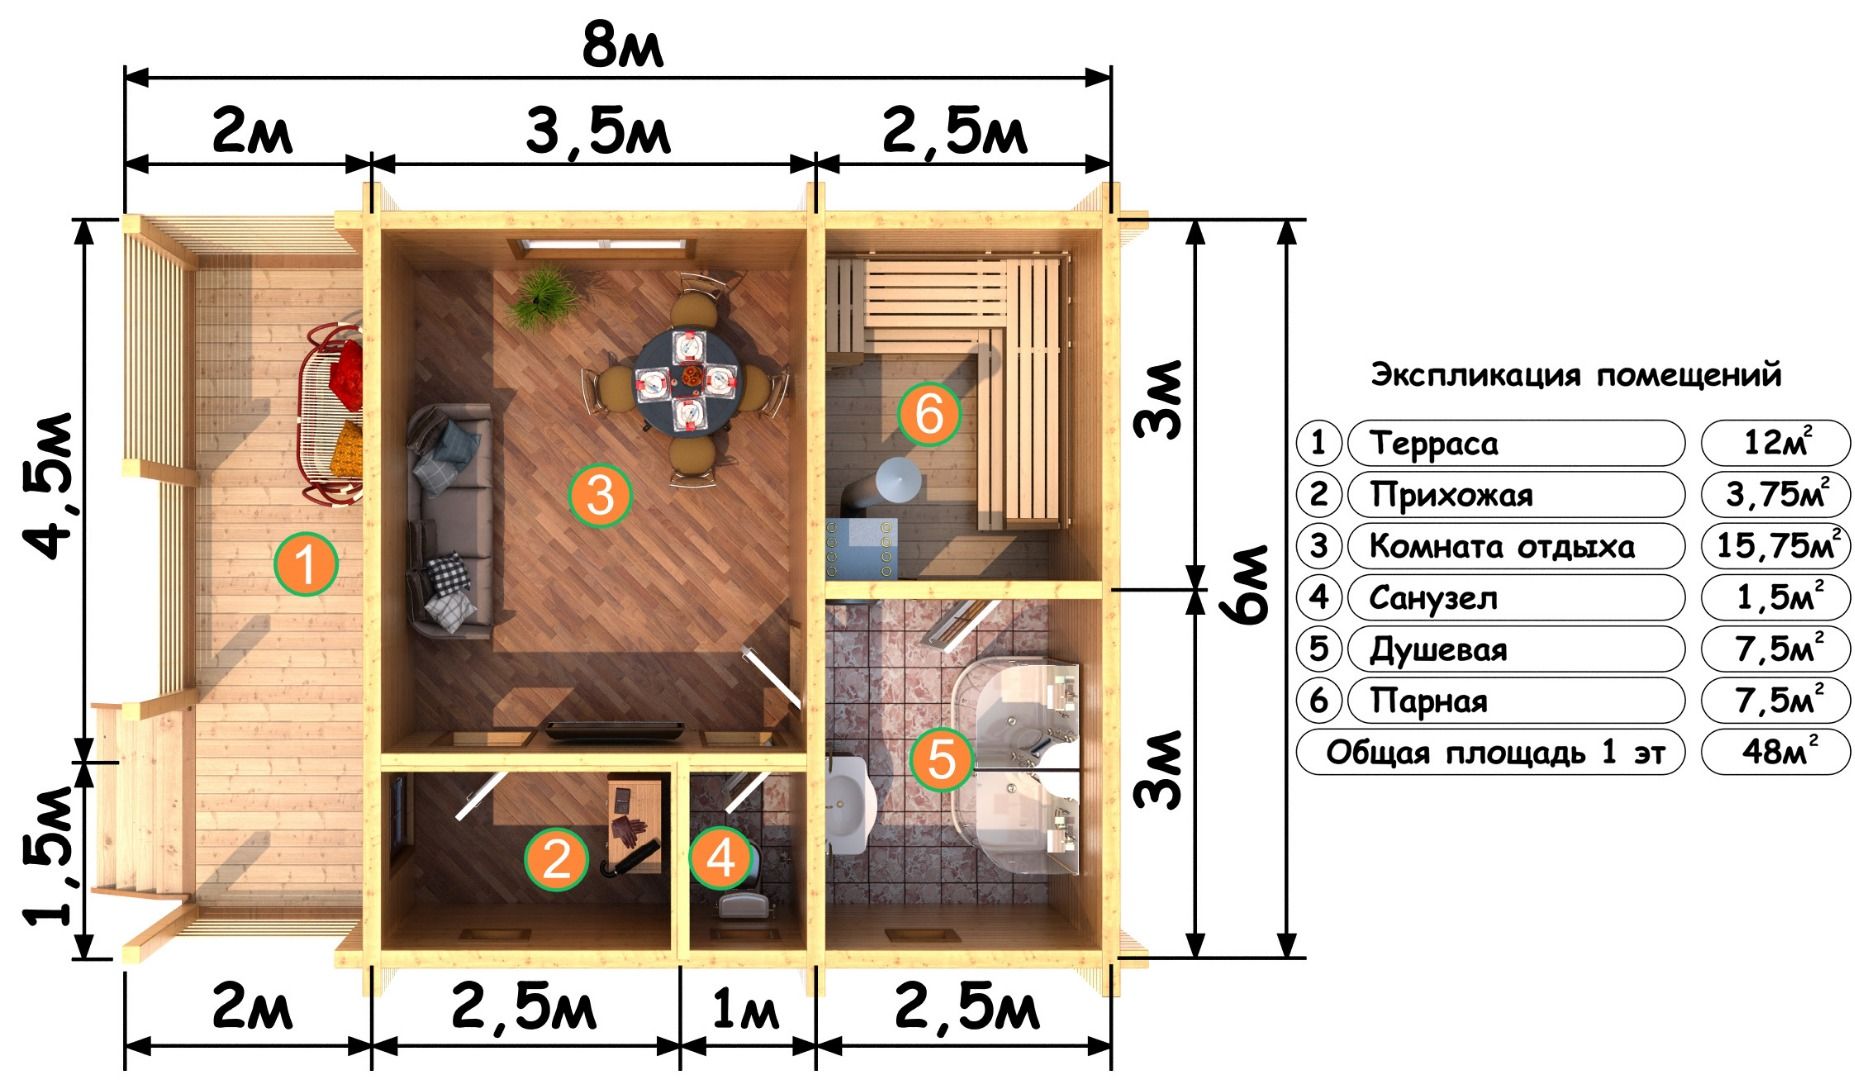 Планировка бани размером 4х6 - мойка и парилка отдельно (65 фото): план внутри помещения площадью 4 на 6, чертежи и схемы вариантов метражом 6х4